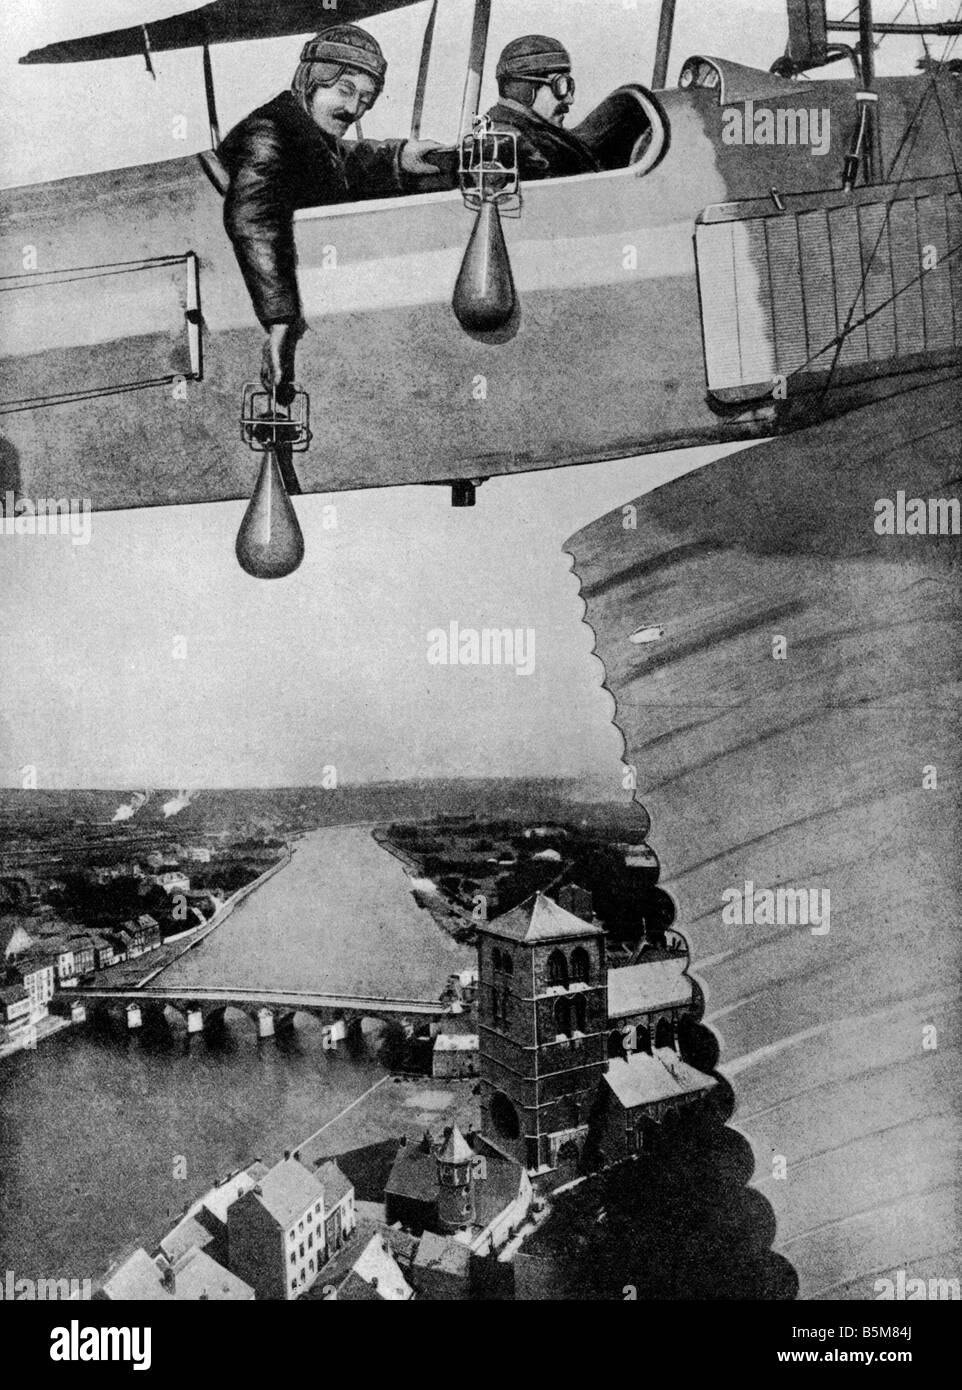 2 G55 B1 1914 aviateurs 3 bombes DE LA PREMIÈRE GUERRE MONDIALE, Montage de la Première Guerre mondiale, l'histoire des aviateurs de la guerre aérienne des bombes Montage c 1914 Banque D'Images